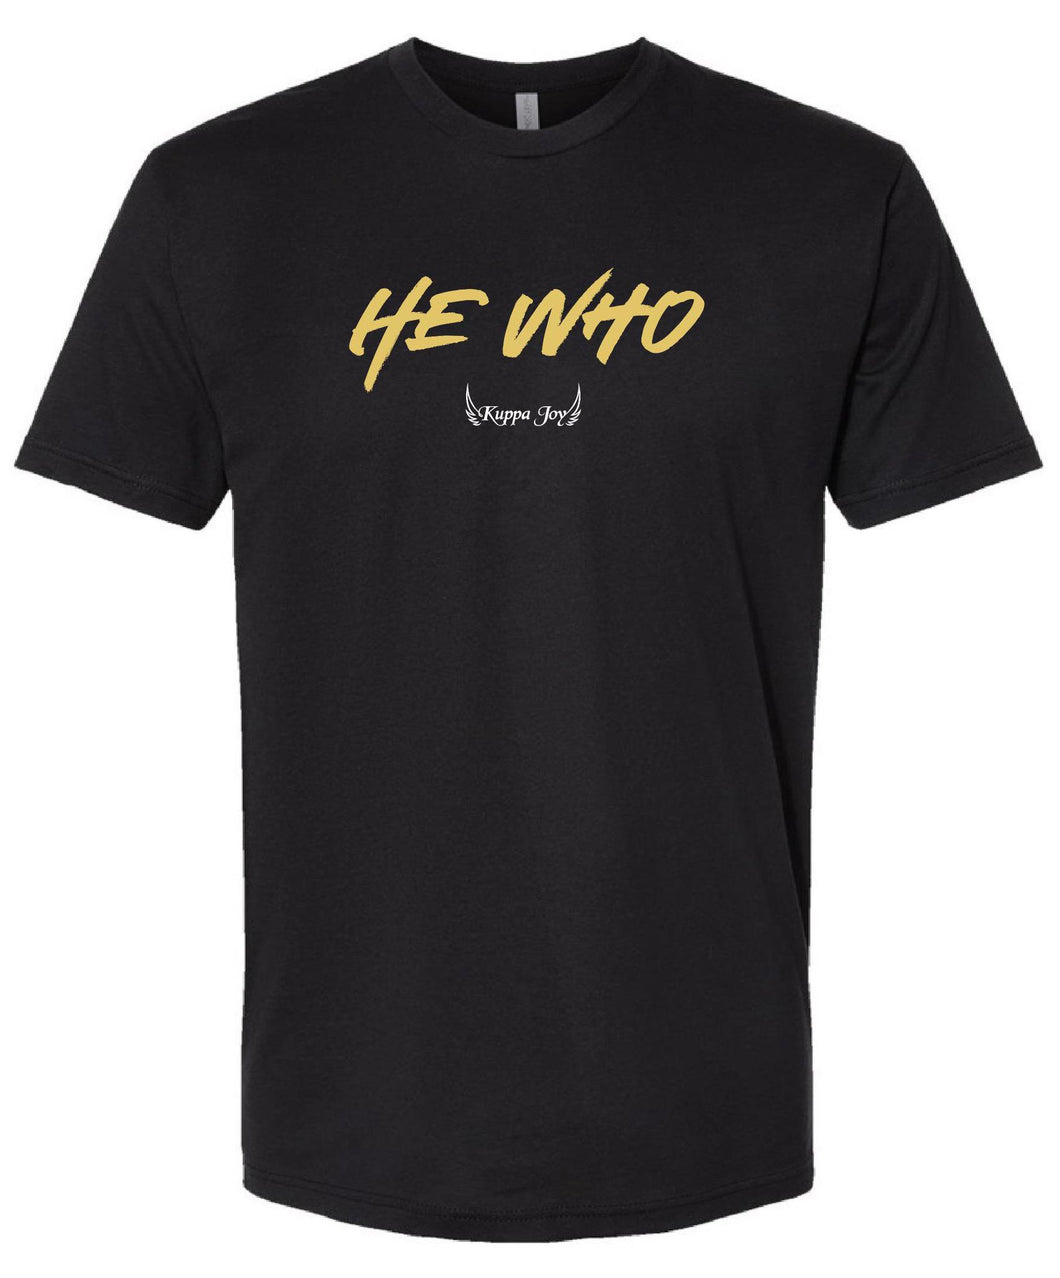 He Who T-Shirt